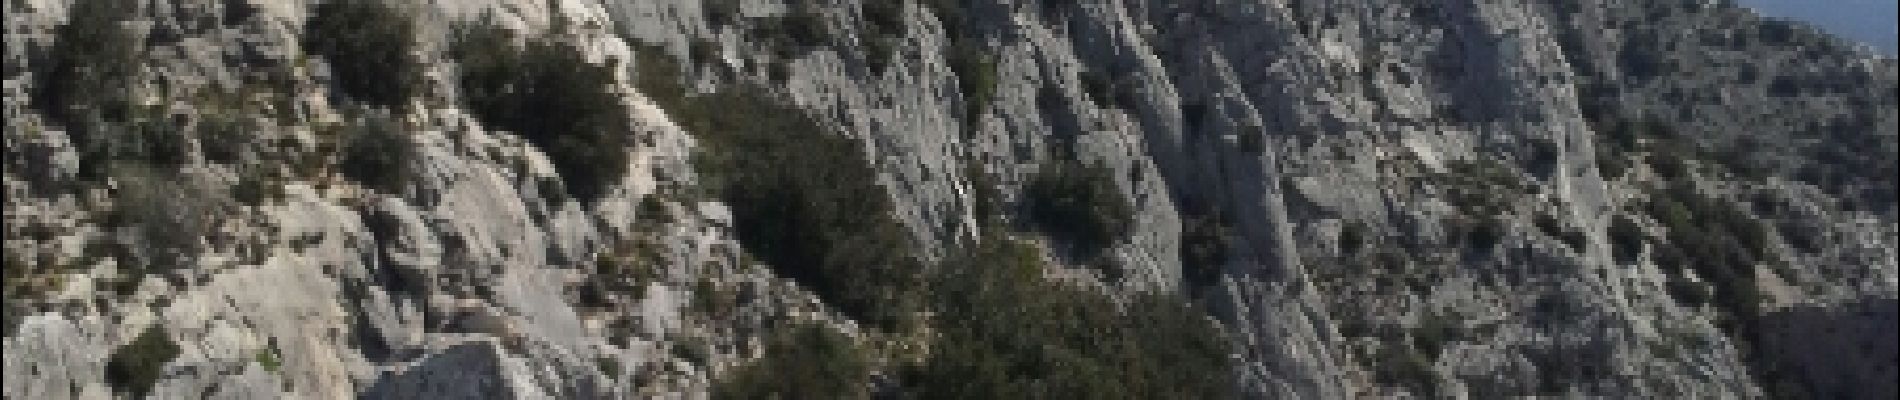 Point of interest Vauvenargues - le Bau de L'aigle vu du Col de St Ser - Photo